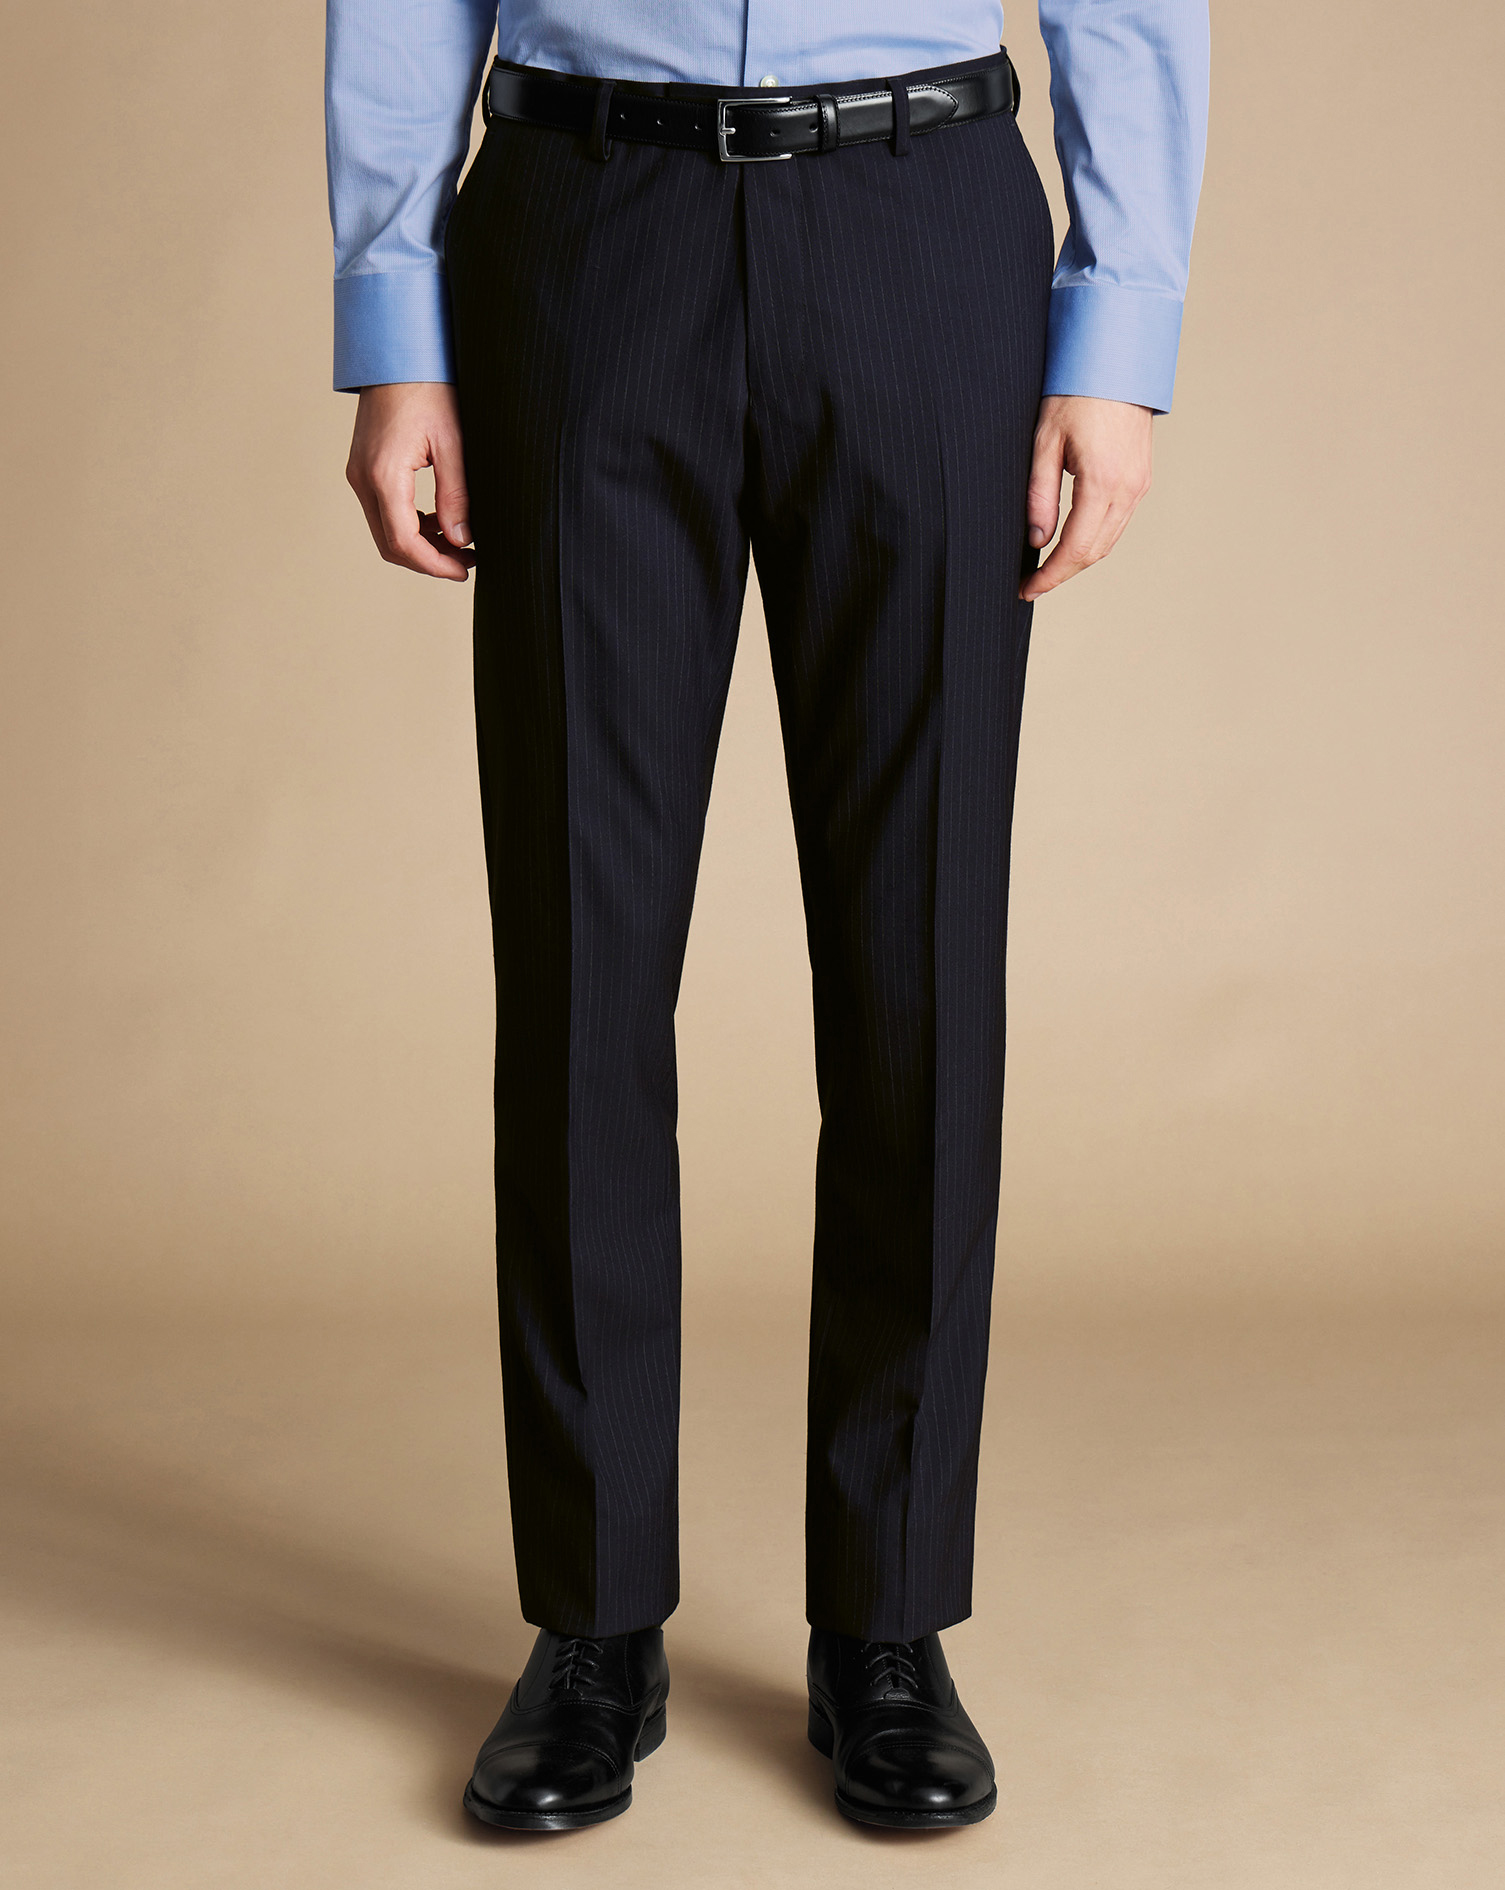 Men's Charles Tyrwhitt Ultimate Performance Stripe Suit Trousers - Dark Navy Size 34/30
